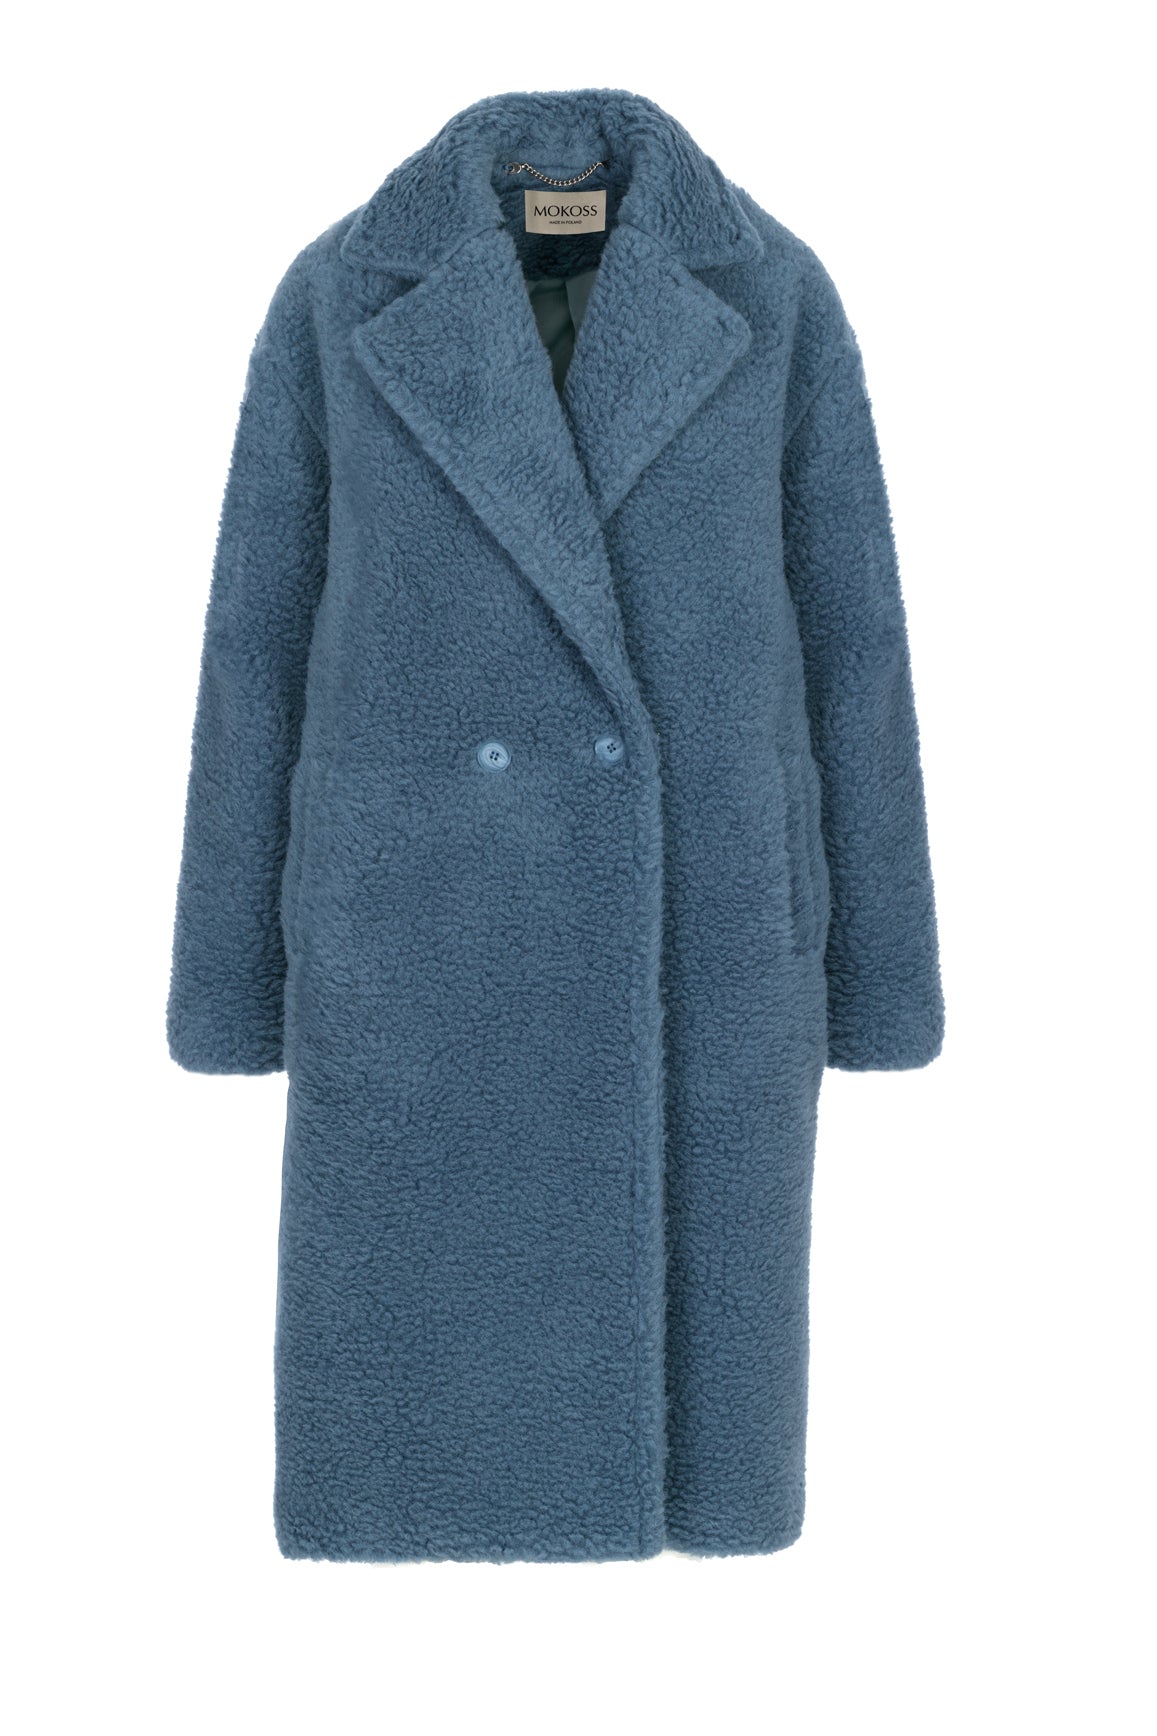 NORA coat